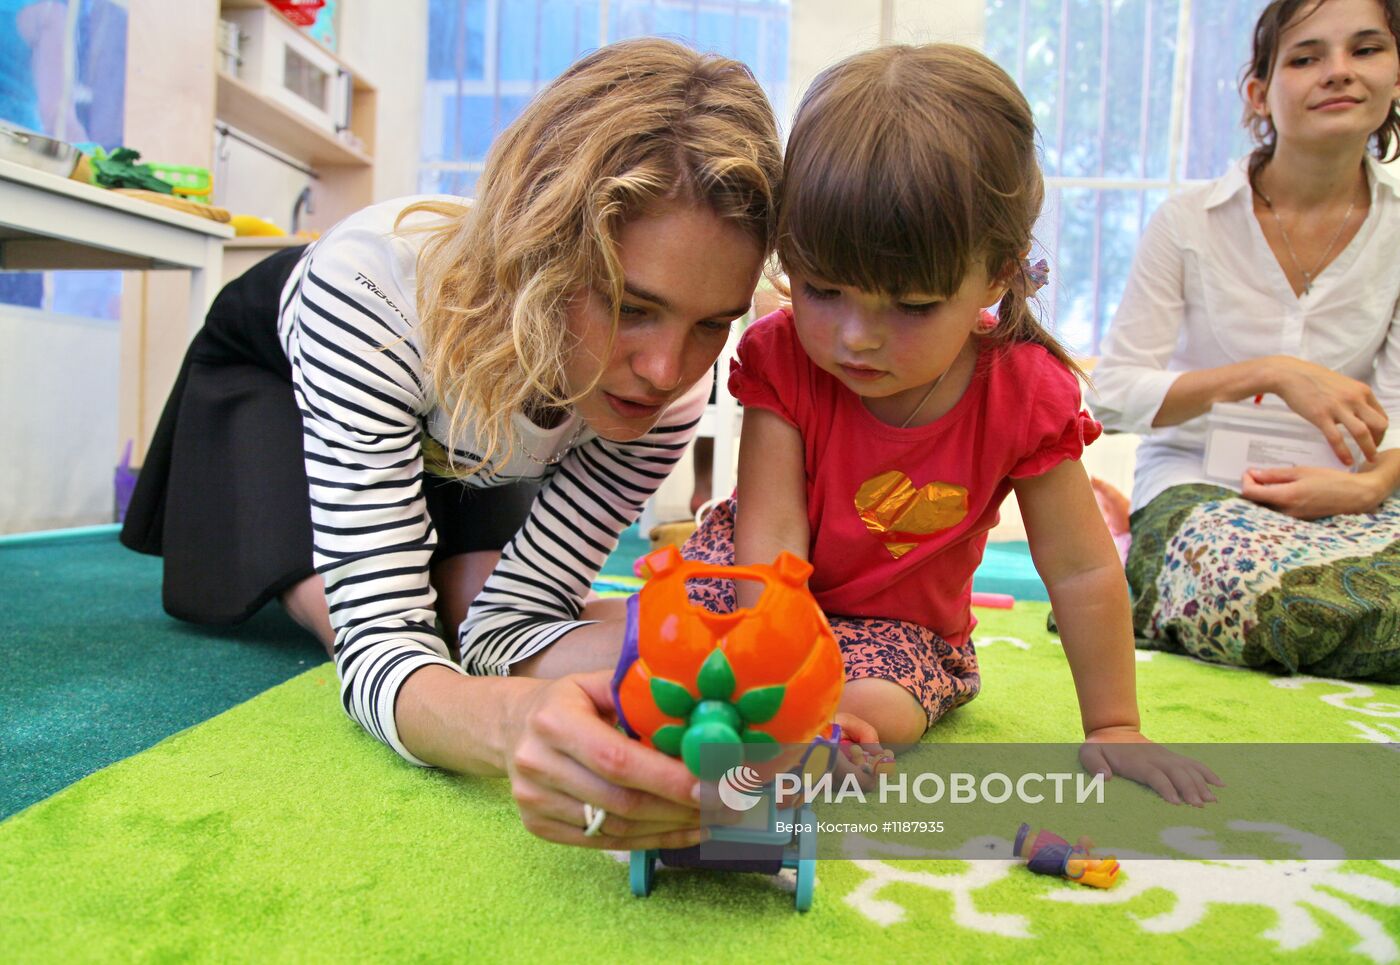 Топ-модель Наталья Водянова открыла детскую площадку в Крымске